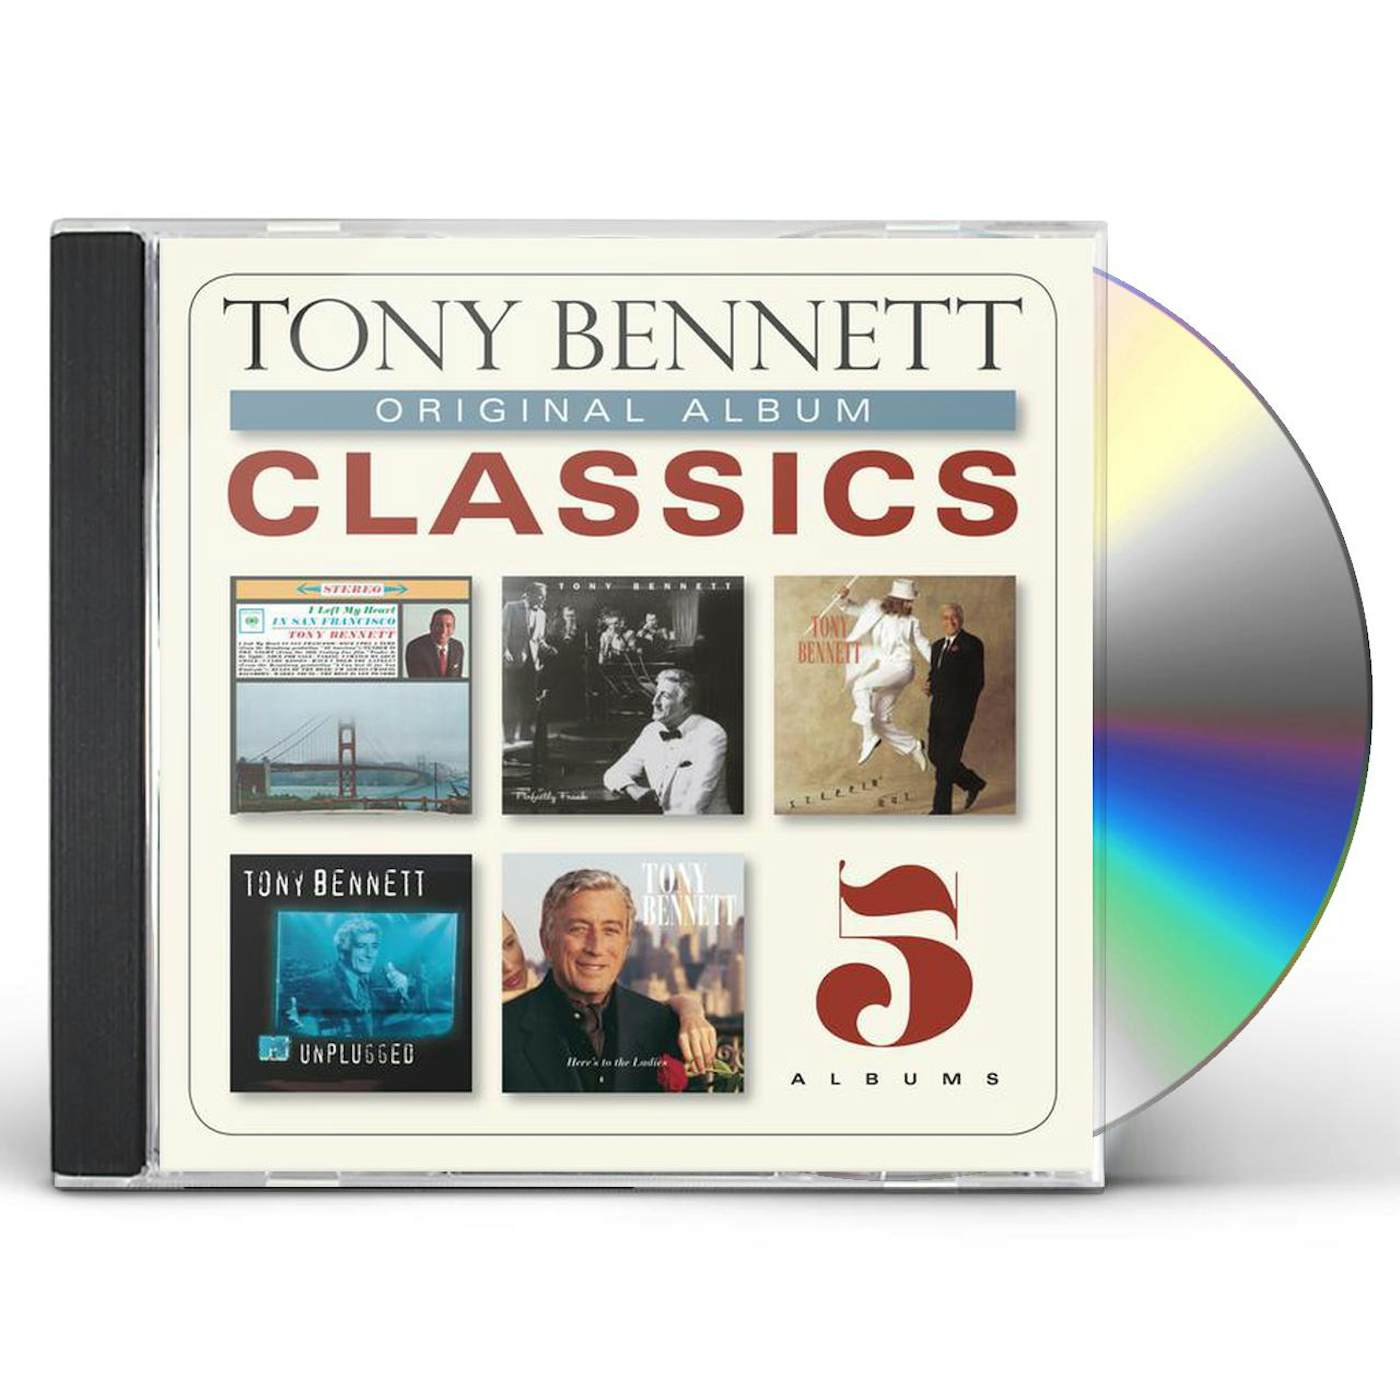 Tony Bennett Original Album Classics (Box Set) CD